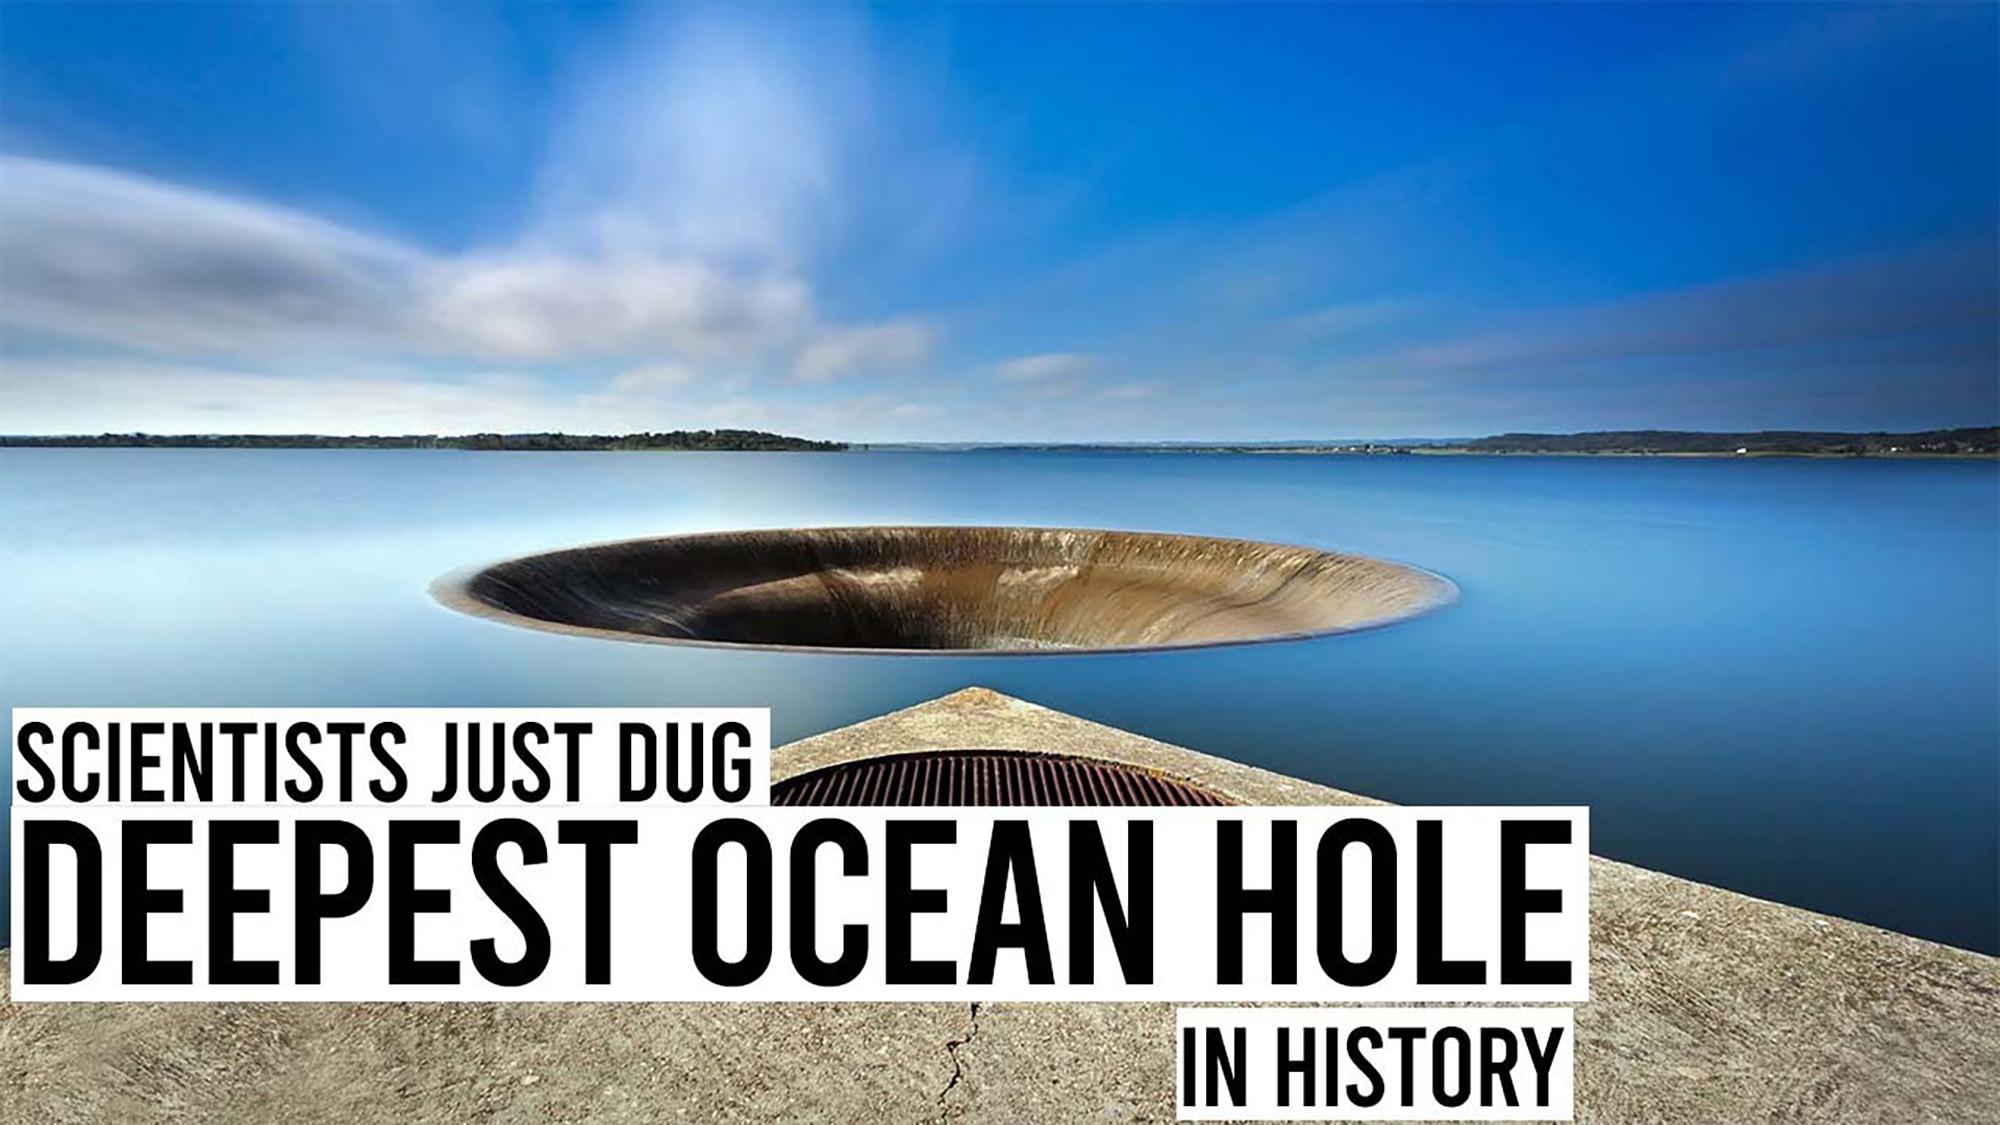 Los científicos acaban de perforar el agujero más profundo del mundo, que está a 26.200 pies bajo el nivel del mar